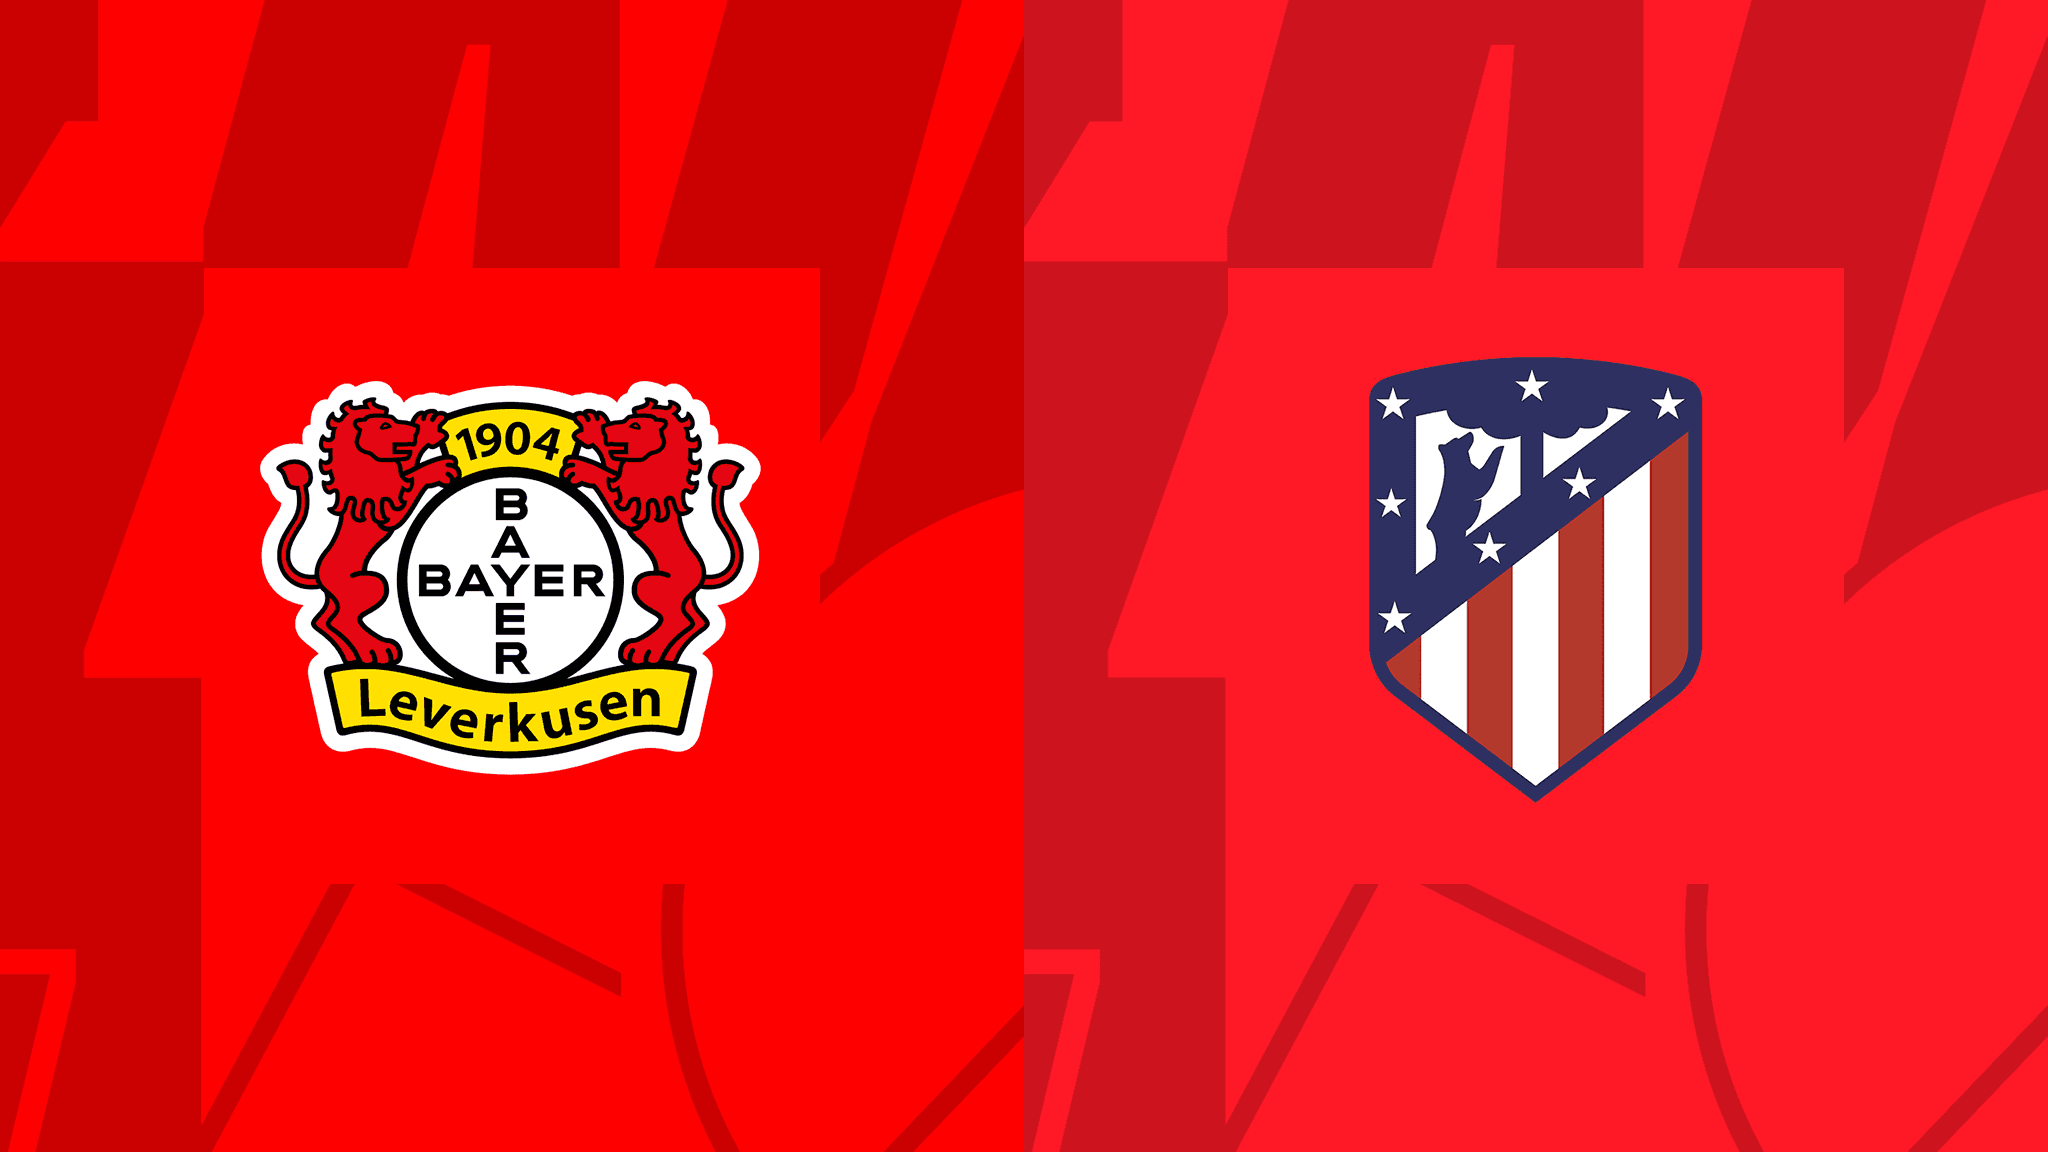 مشاهدة مباراة أتلتيكو مدريد و باير ليفركوزن بث مباشر 13/09/2022 Bayer Leverkusen vs Atlético Madrid￼